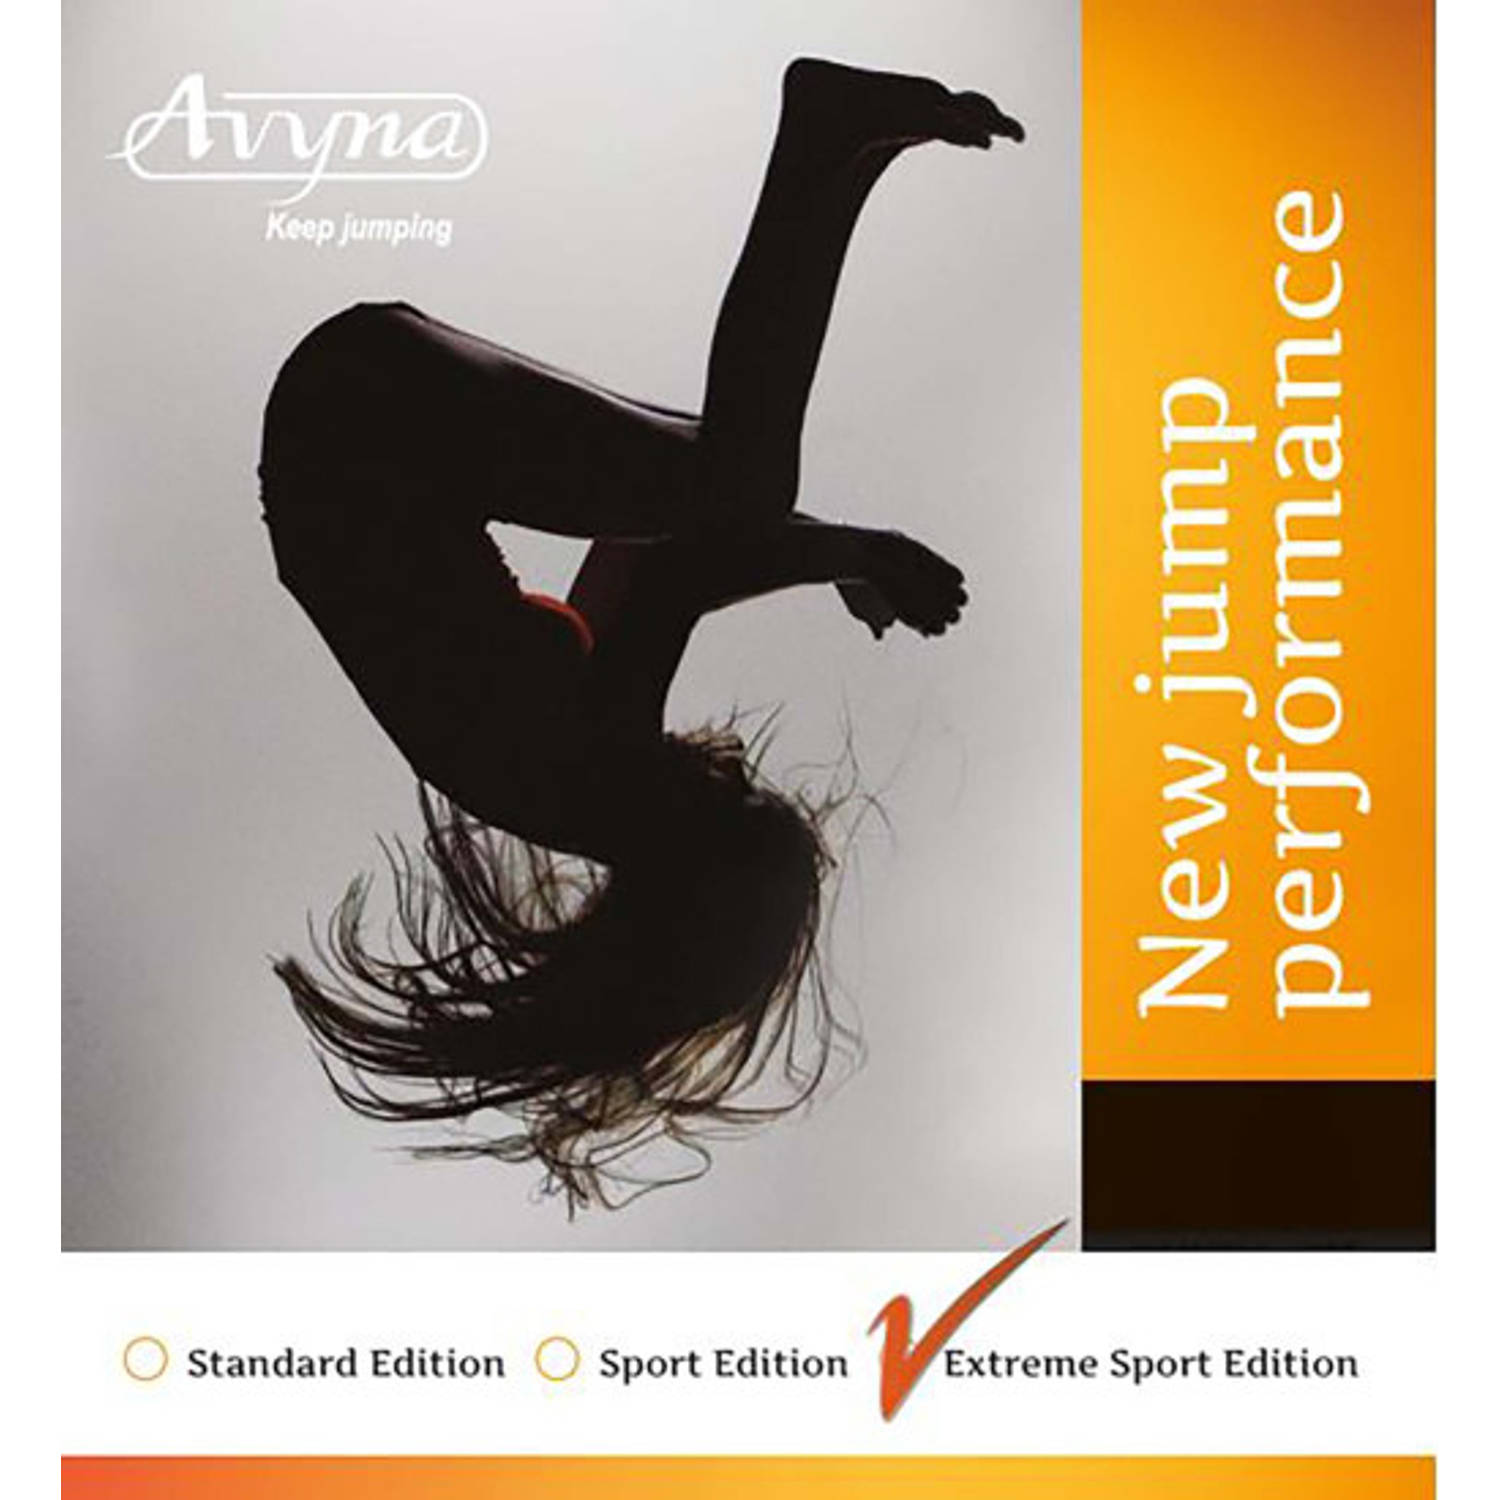 Avyna trampoline veren 17,5 cm - Extreme Sport Edition - 14 stuks veren - voor trampoline 223